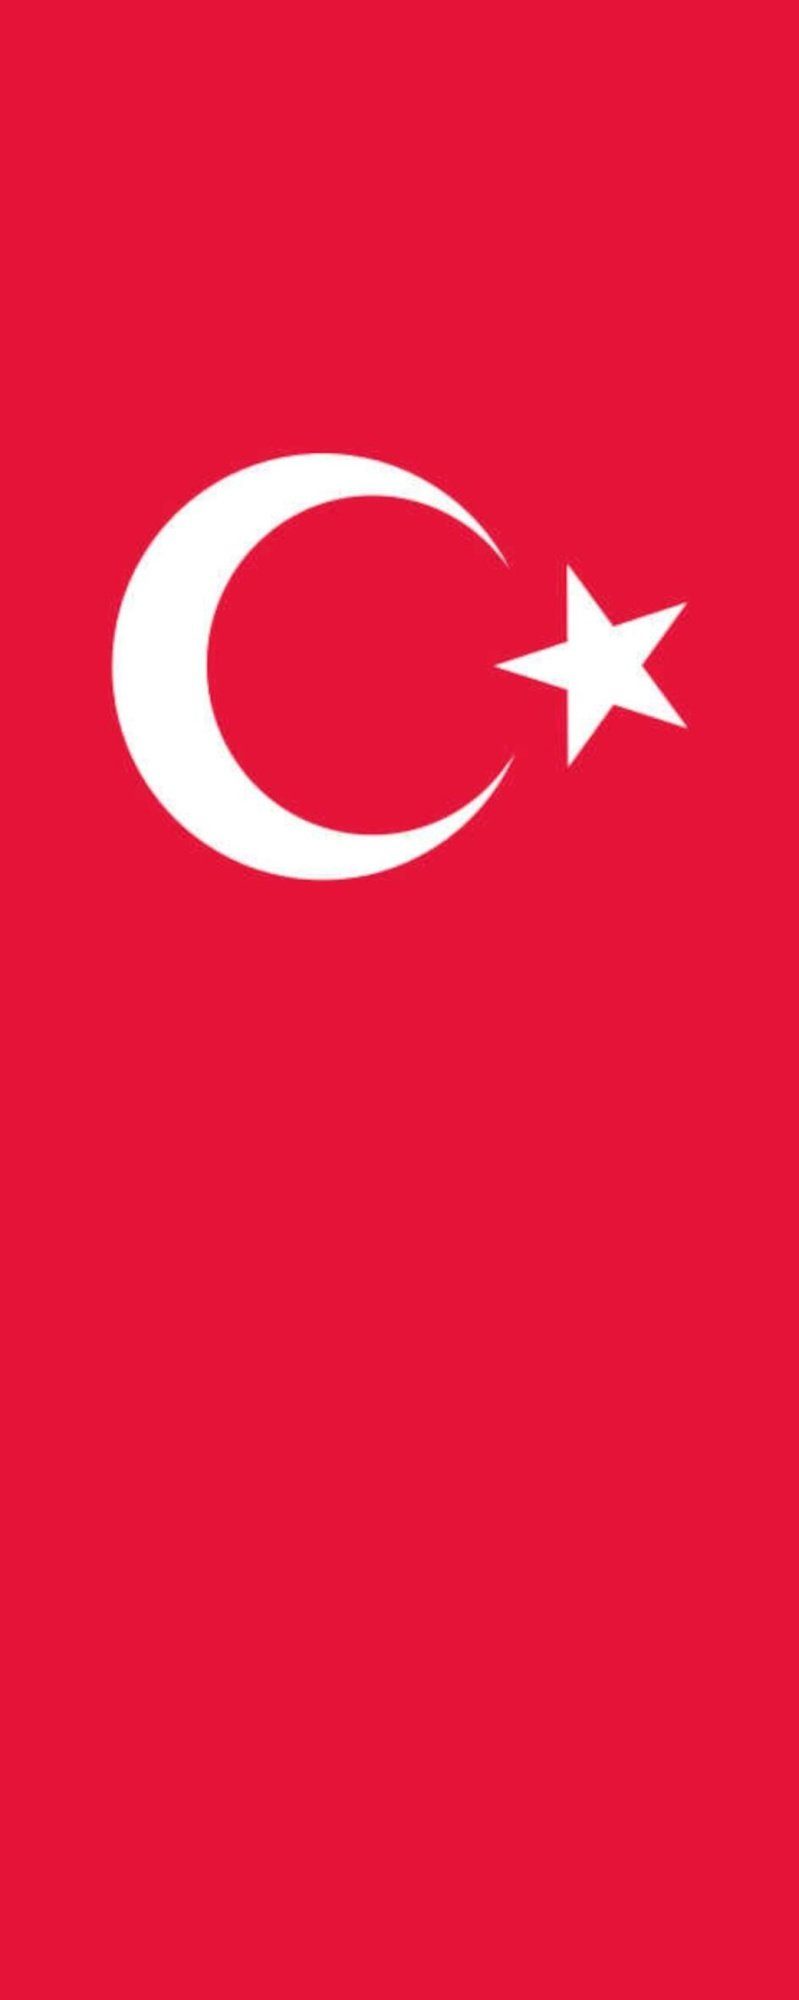 Türkei flaggenmeer Hochformat g/m² 110 Flagge Flagge